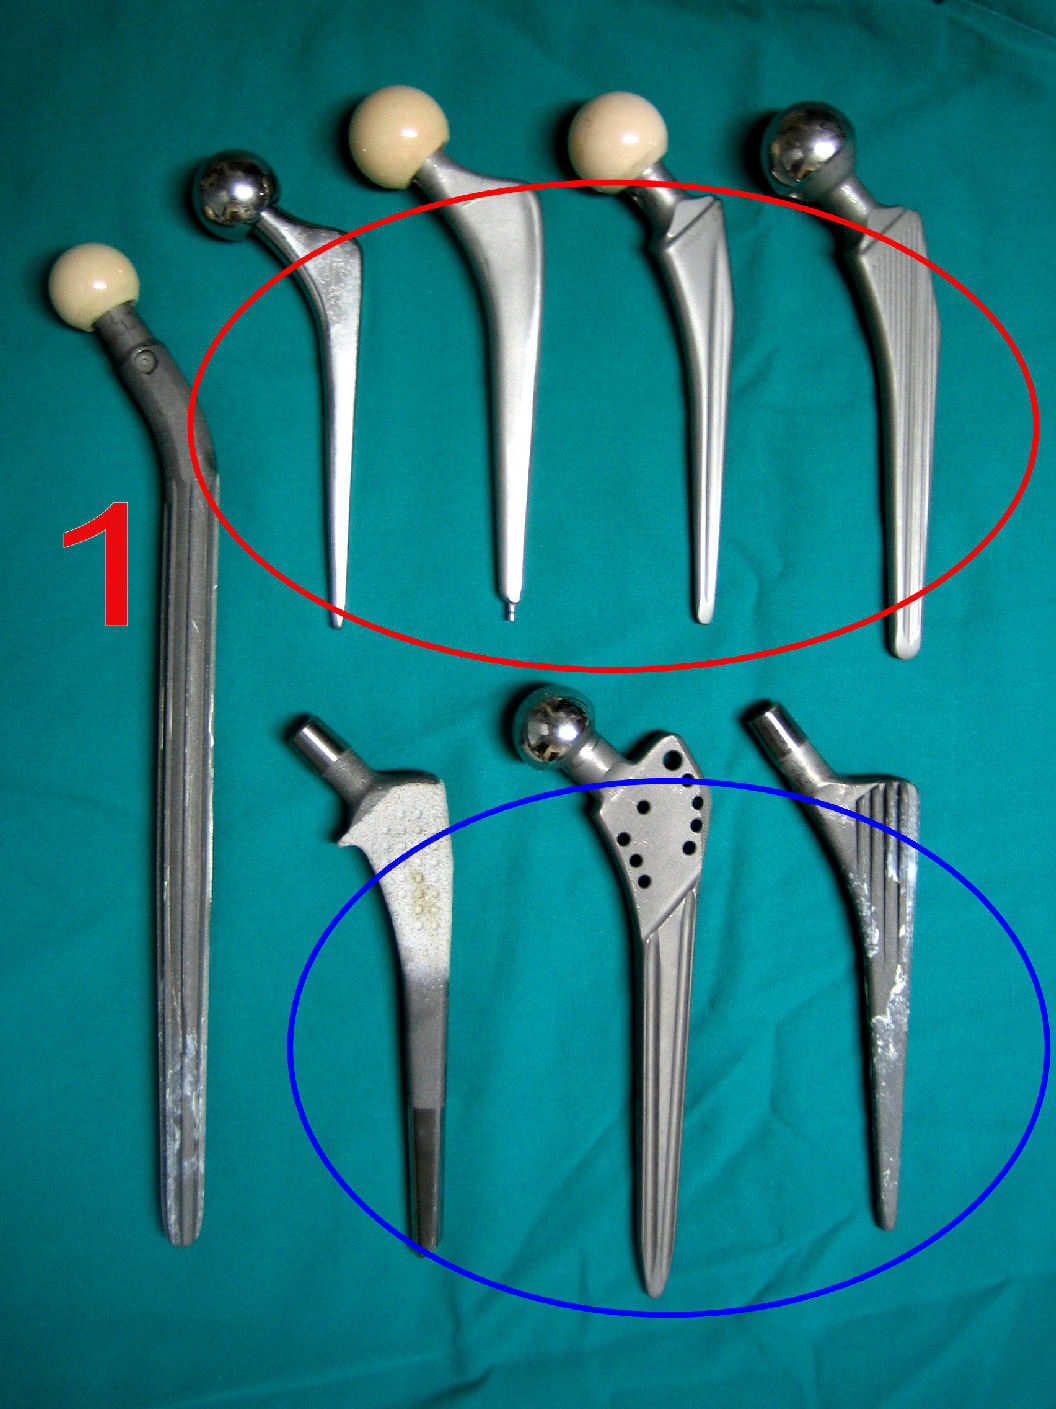 Protesis parcial de cadera